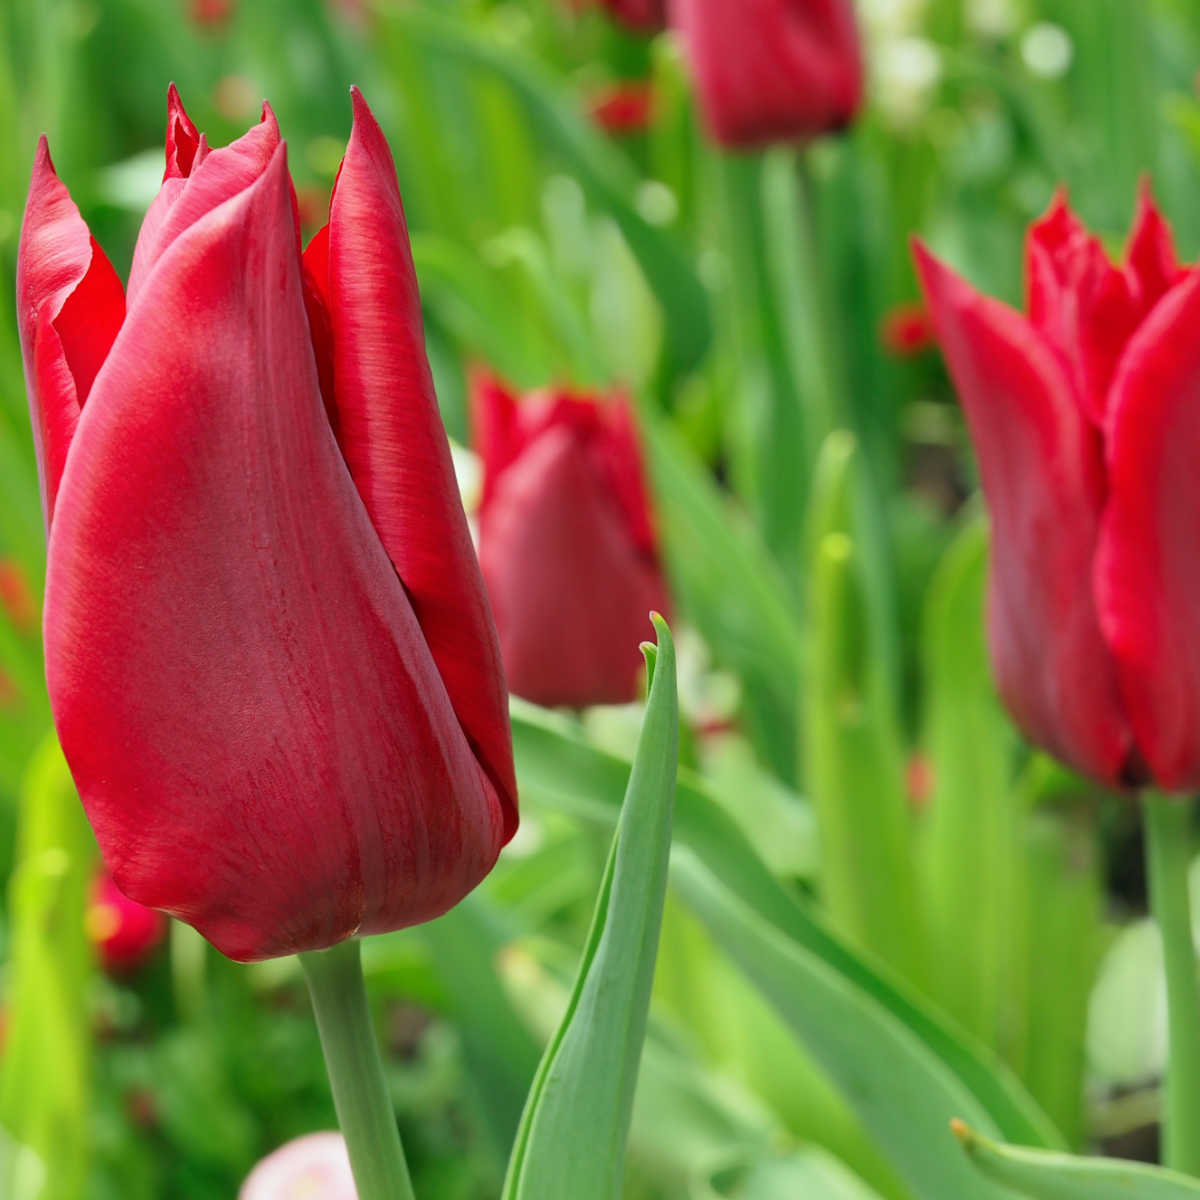 Red emperor tulips in bloom.